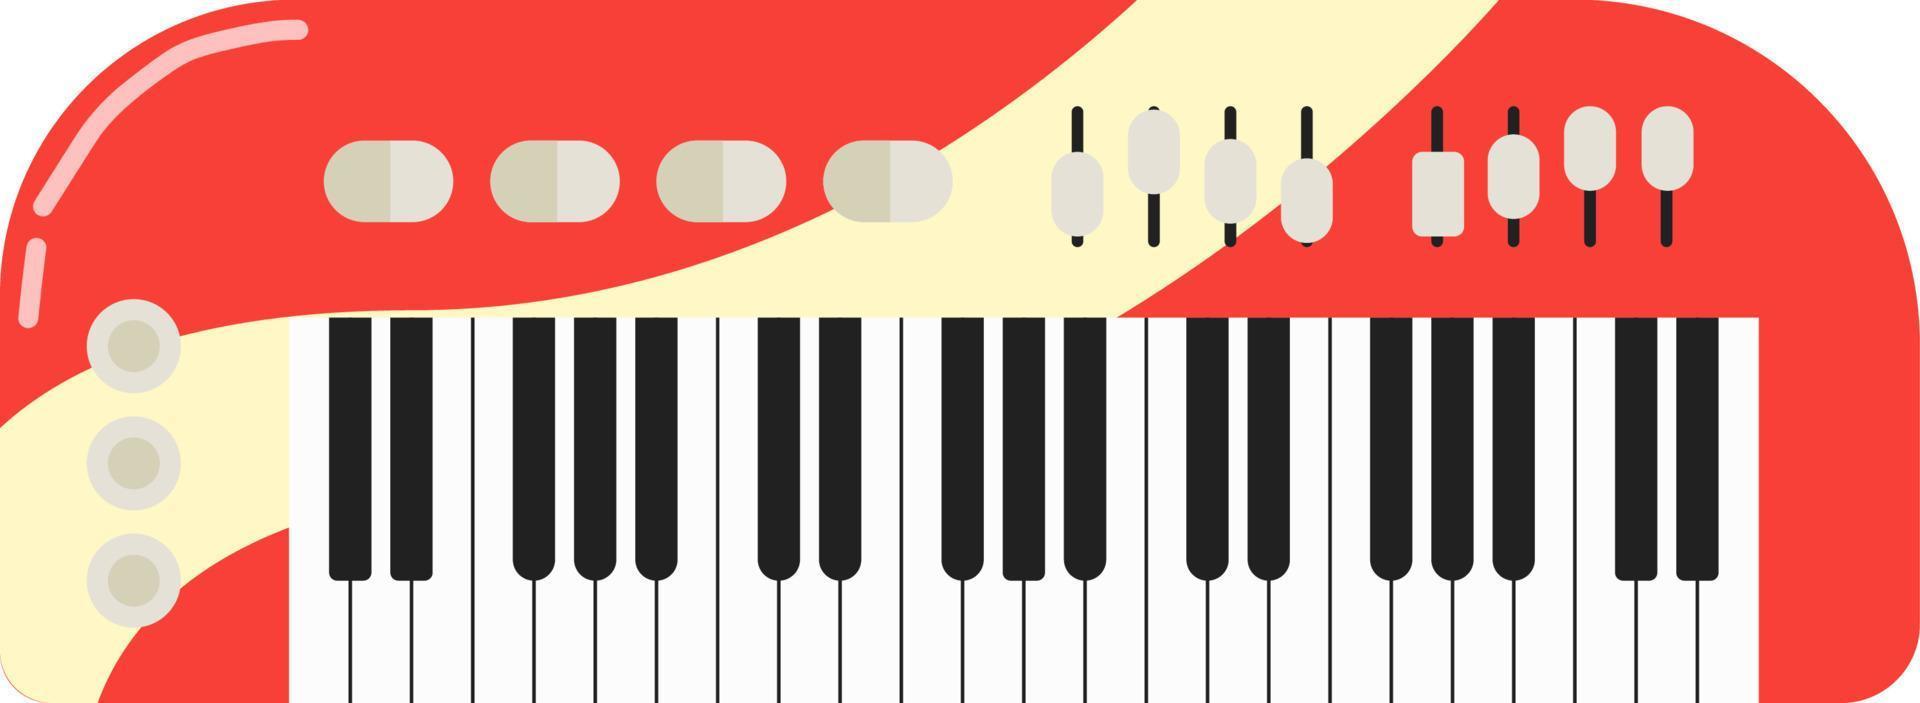 teclado de piano vermelho. sintetizador musical de desenho animado. ilustração vetorial isolada no branco. vetor